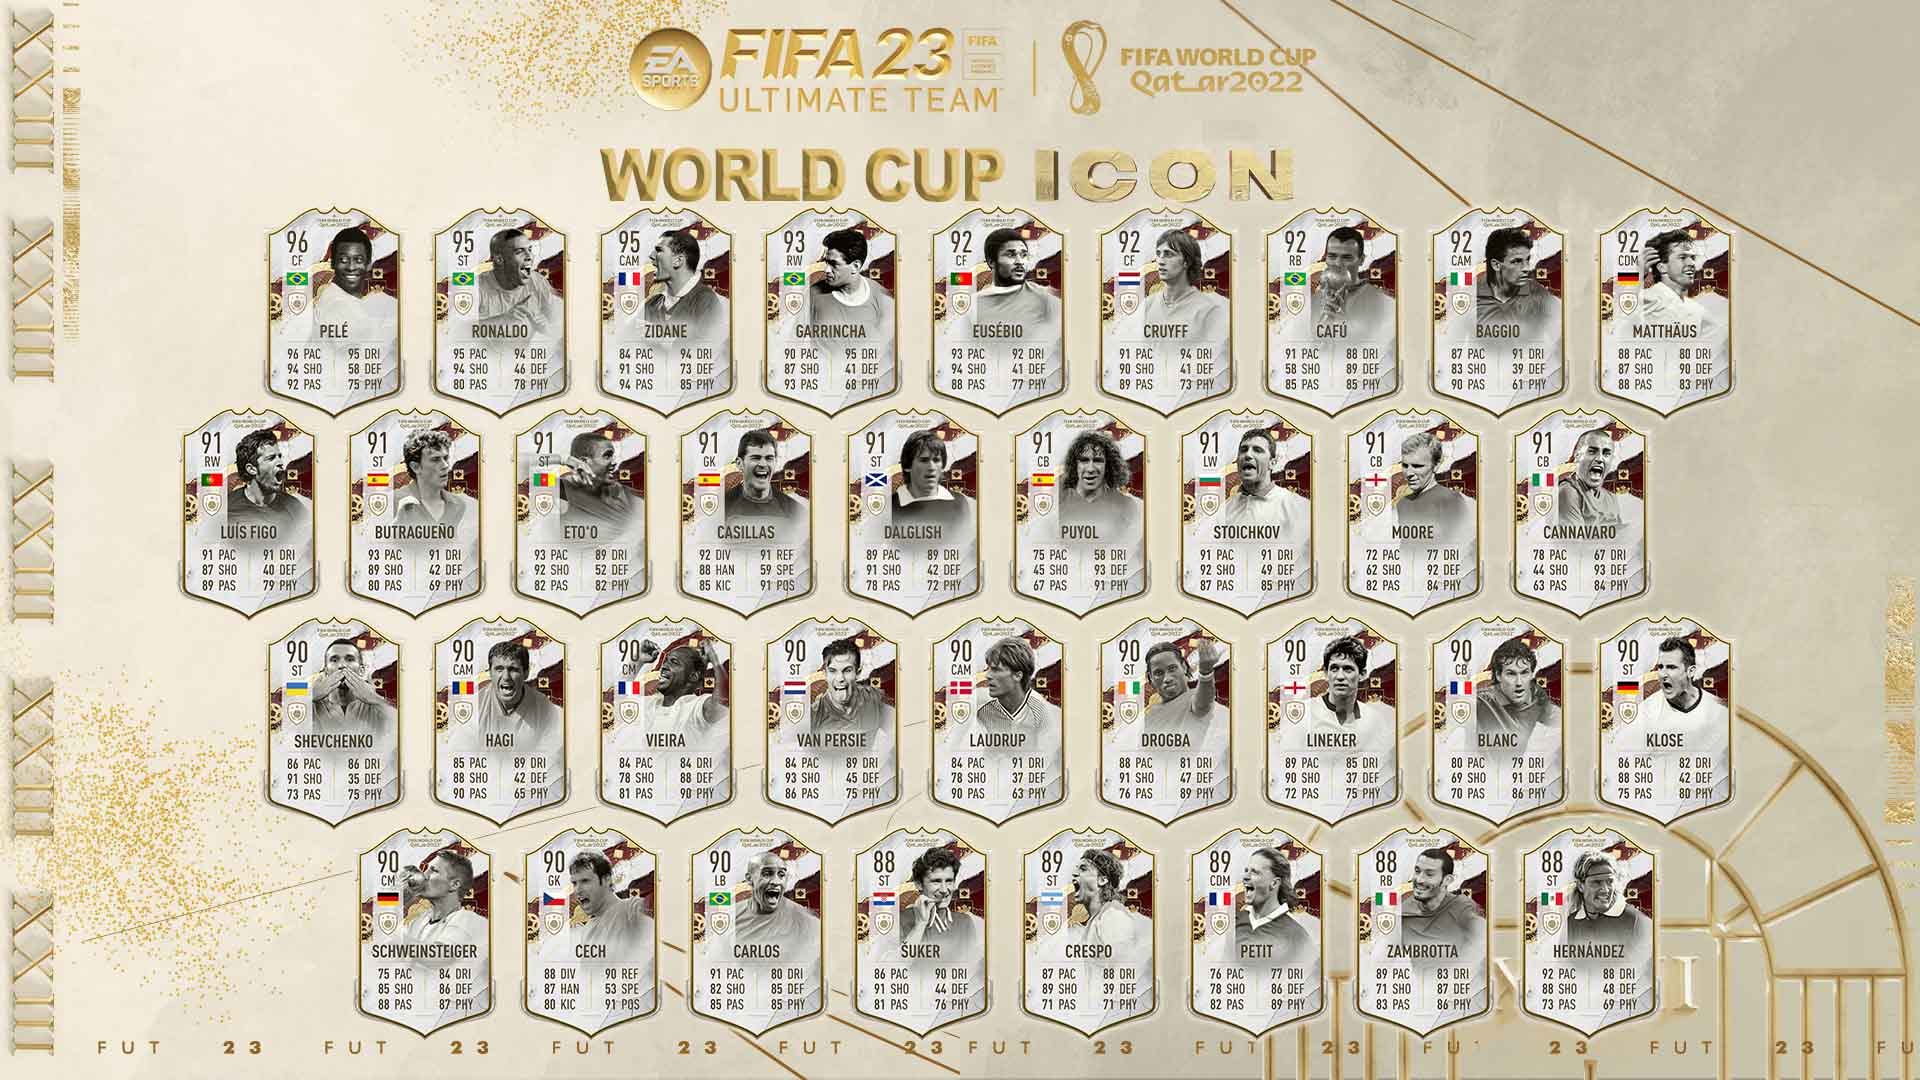 Bilder zu FIFA 23: World Cup Icons Team 1 ist da - Alle WM Ikonen, Leaks und Infos im Überblick